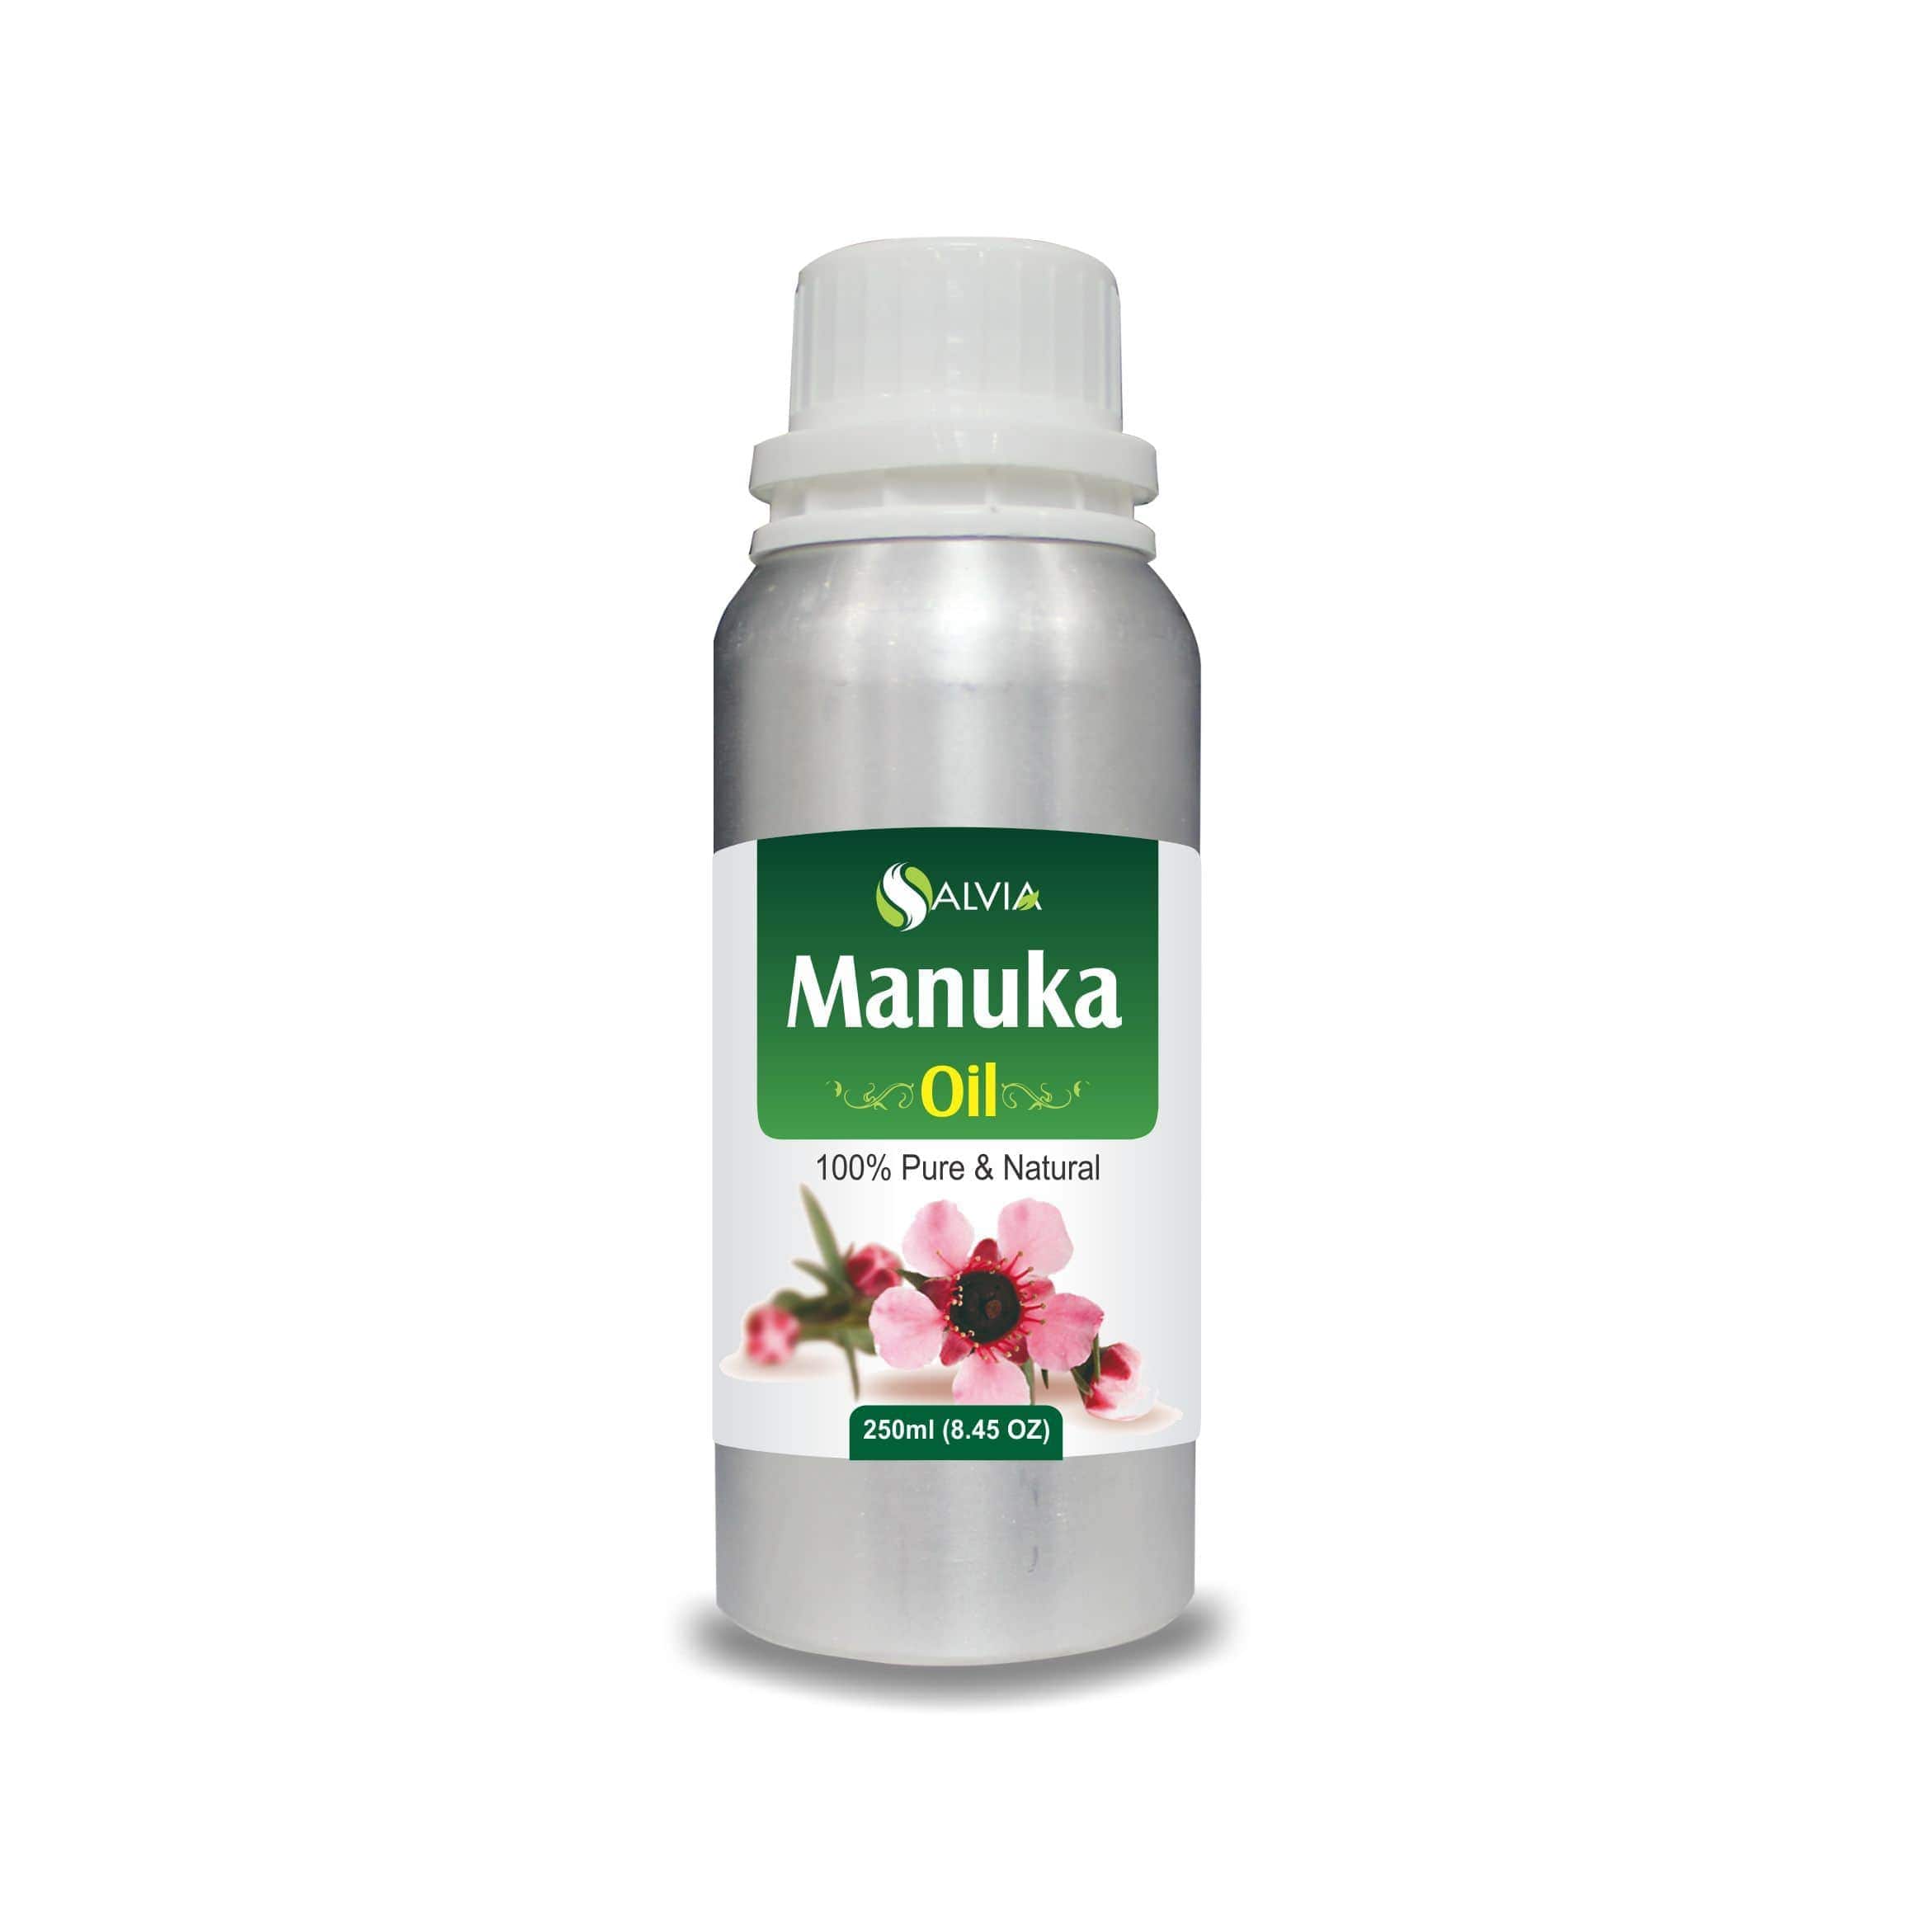 Salvia Natural Essential Oils 250ml Manuka Oil (Leptospermum-Scoparium) Natural Pure Undiluted Essential Oil Cleanses Skin, Reduces Acne, Promotes Skin Health & More